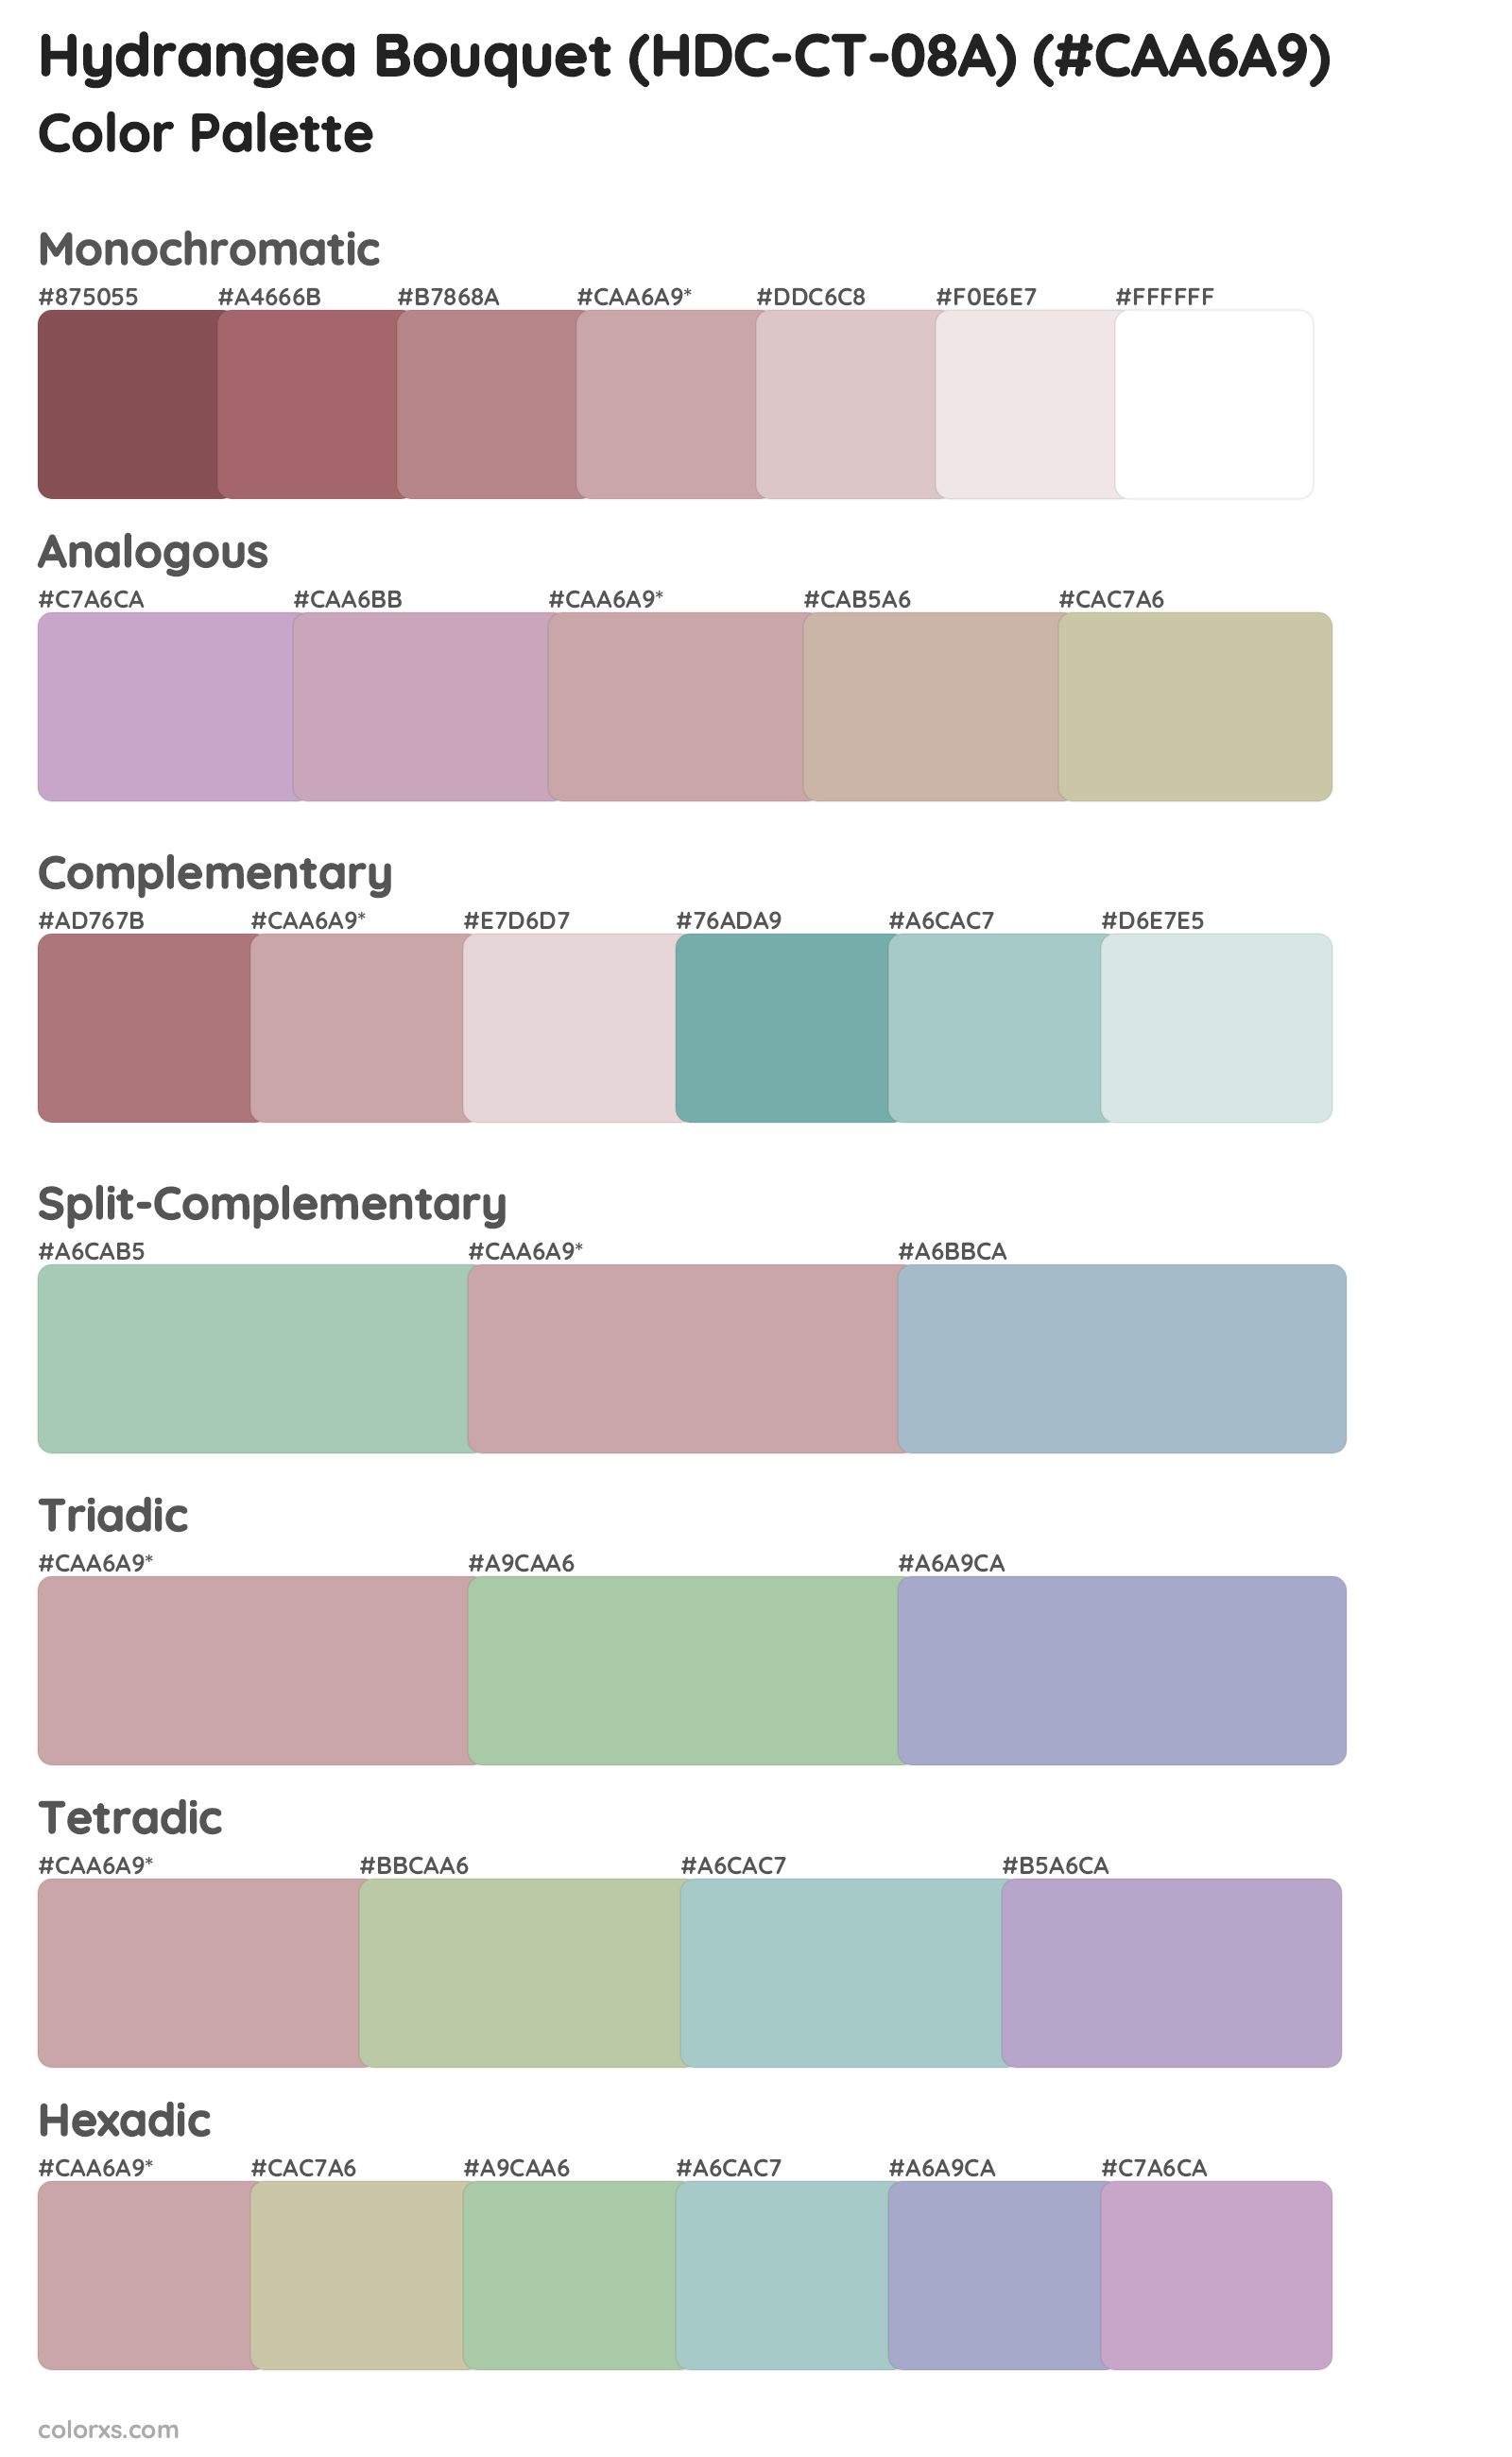 Hydrangea Bouquet (HDC-CT-08A) Color Scheme Palettes